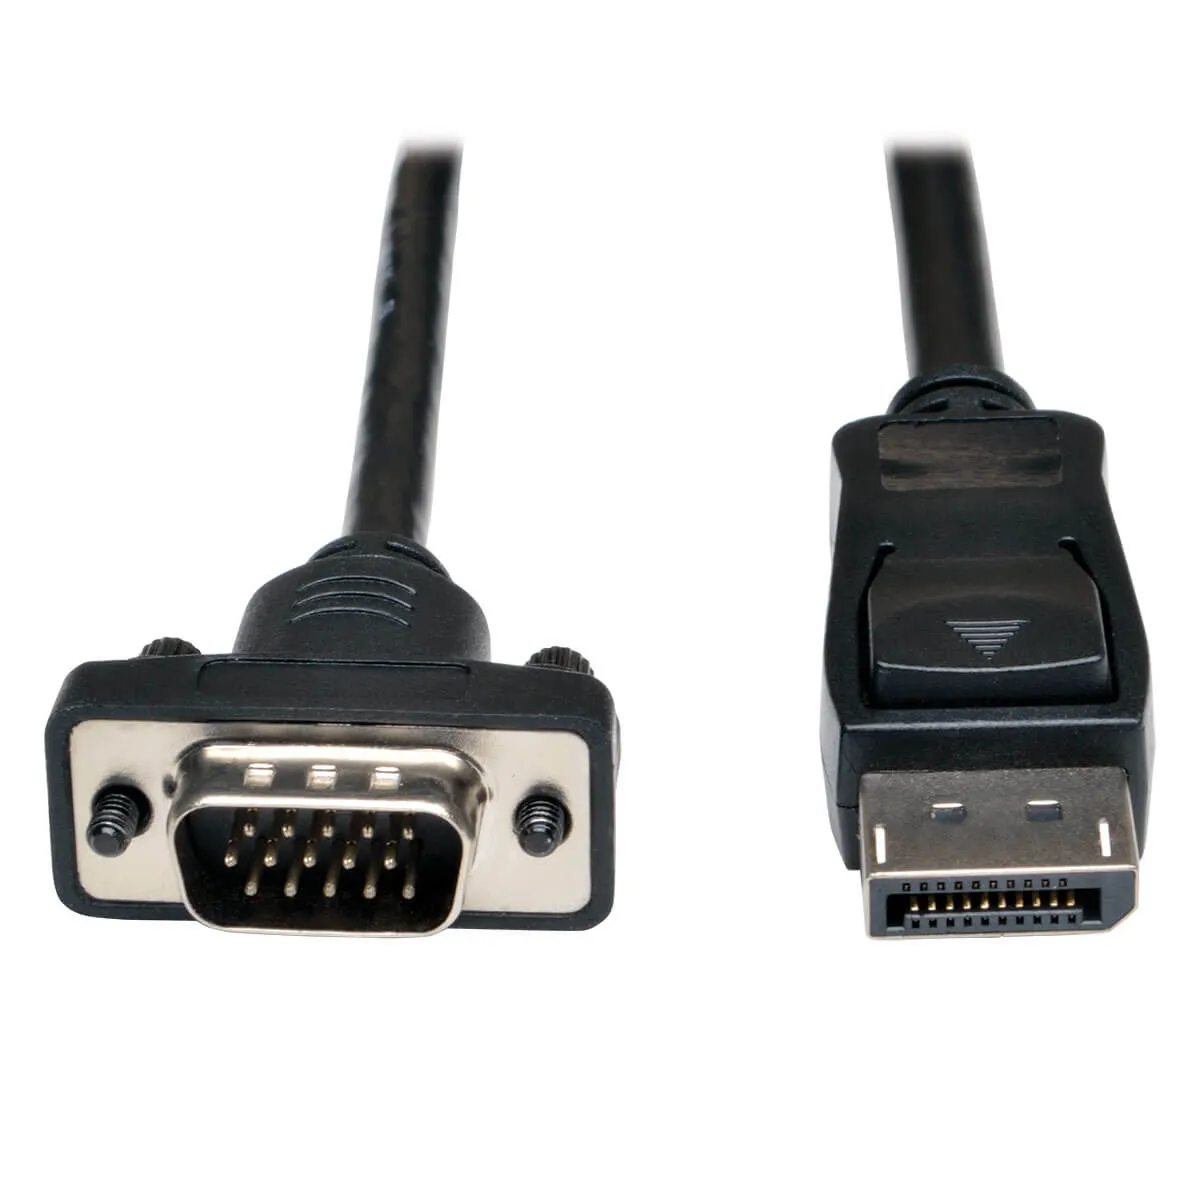 Achat EATON TRIPPLITE DisplayPort 1.2 to VGA Active Adapter Cable DP with et autres produits de la marque Tripp Lite